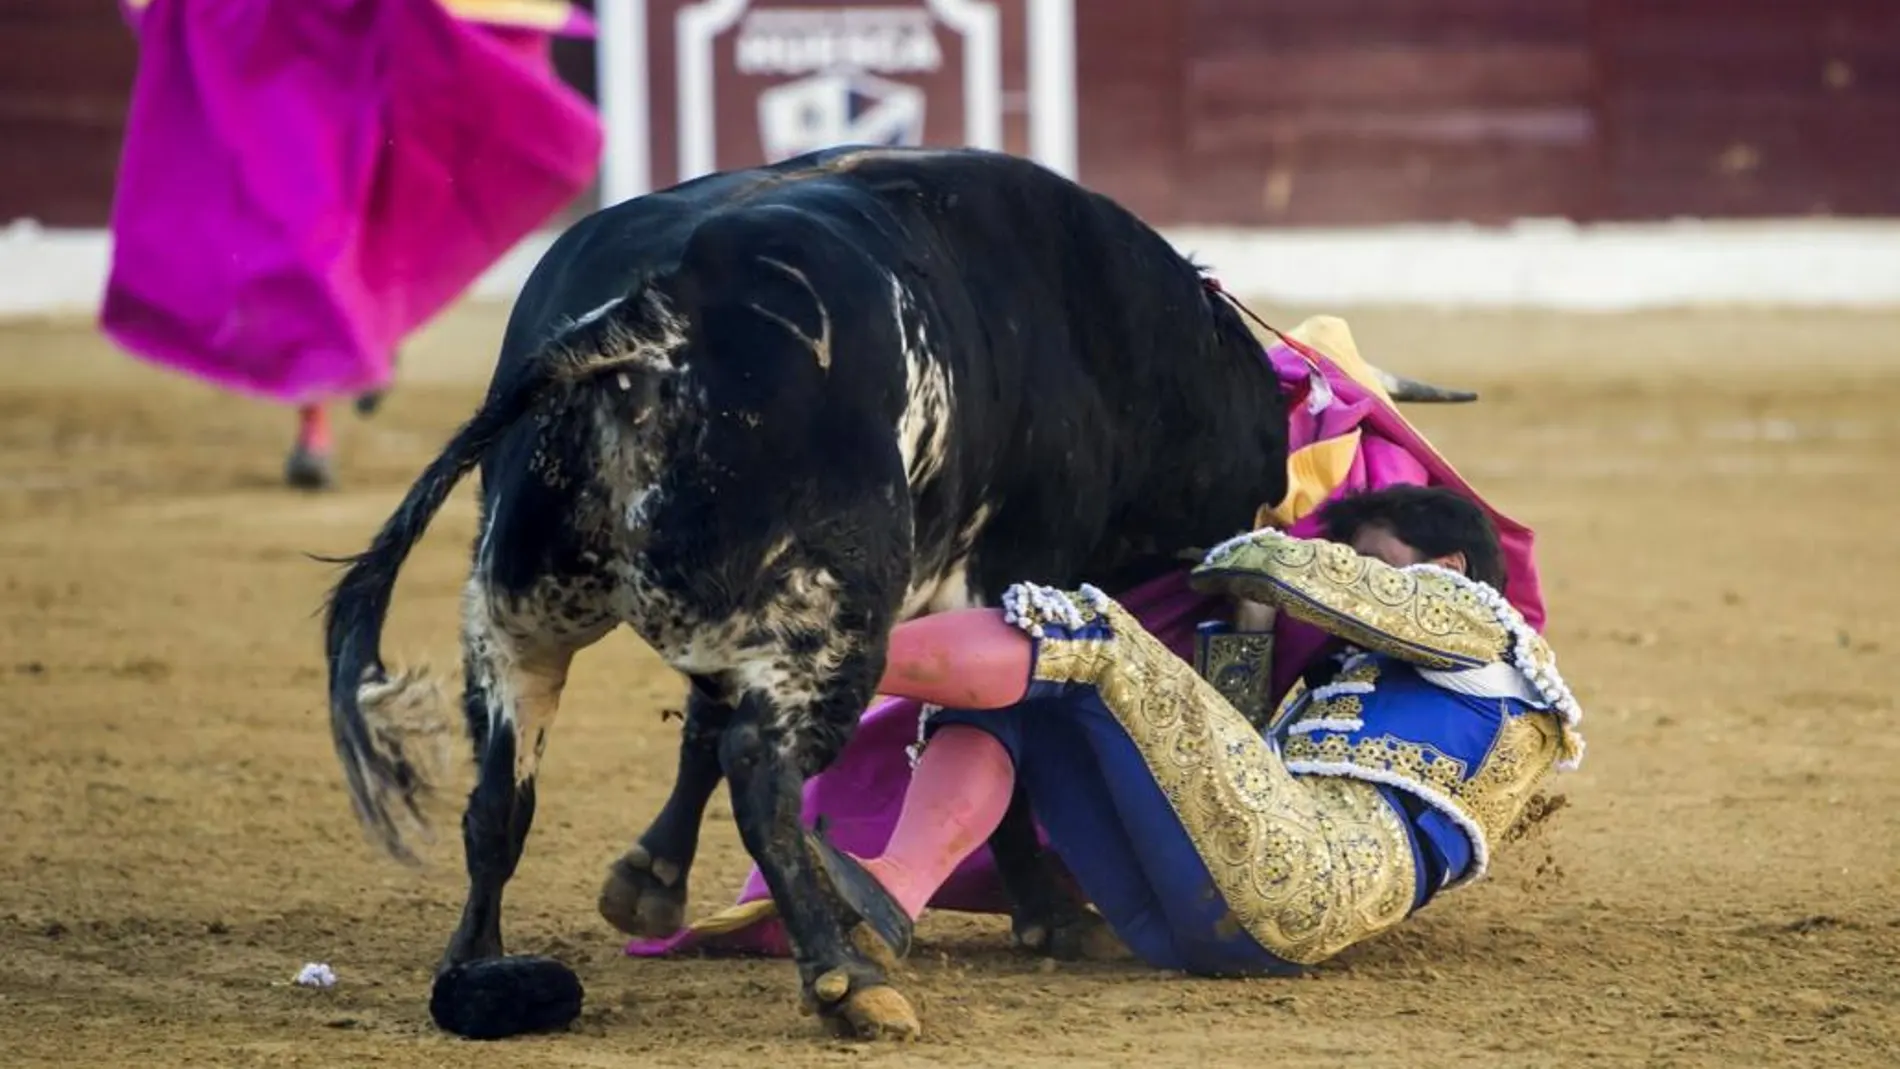 El matador de toros Francisco Rivera Ordóñez "Paquirri"sufre una cogida por el cuarto toro de la tarde durante la corrida de la Feria de San Lorenzo de Huesca